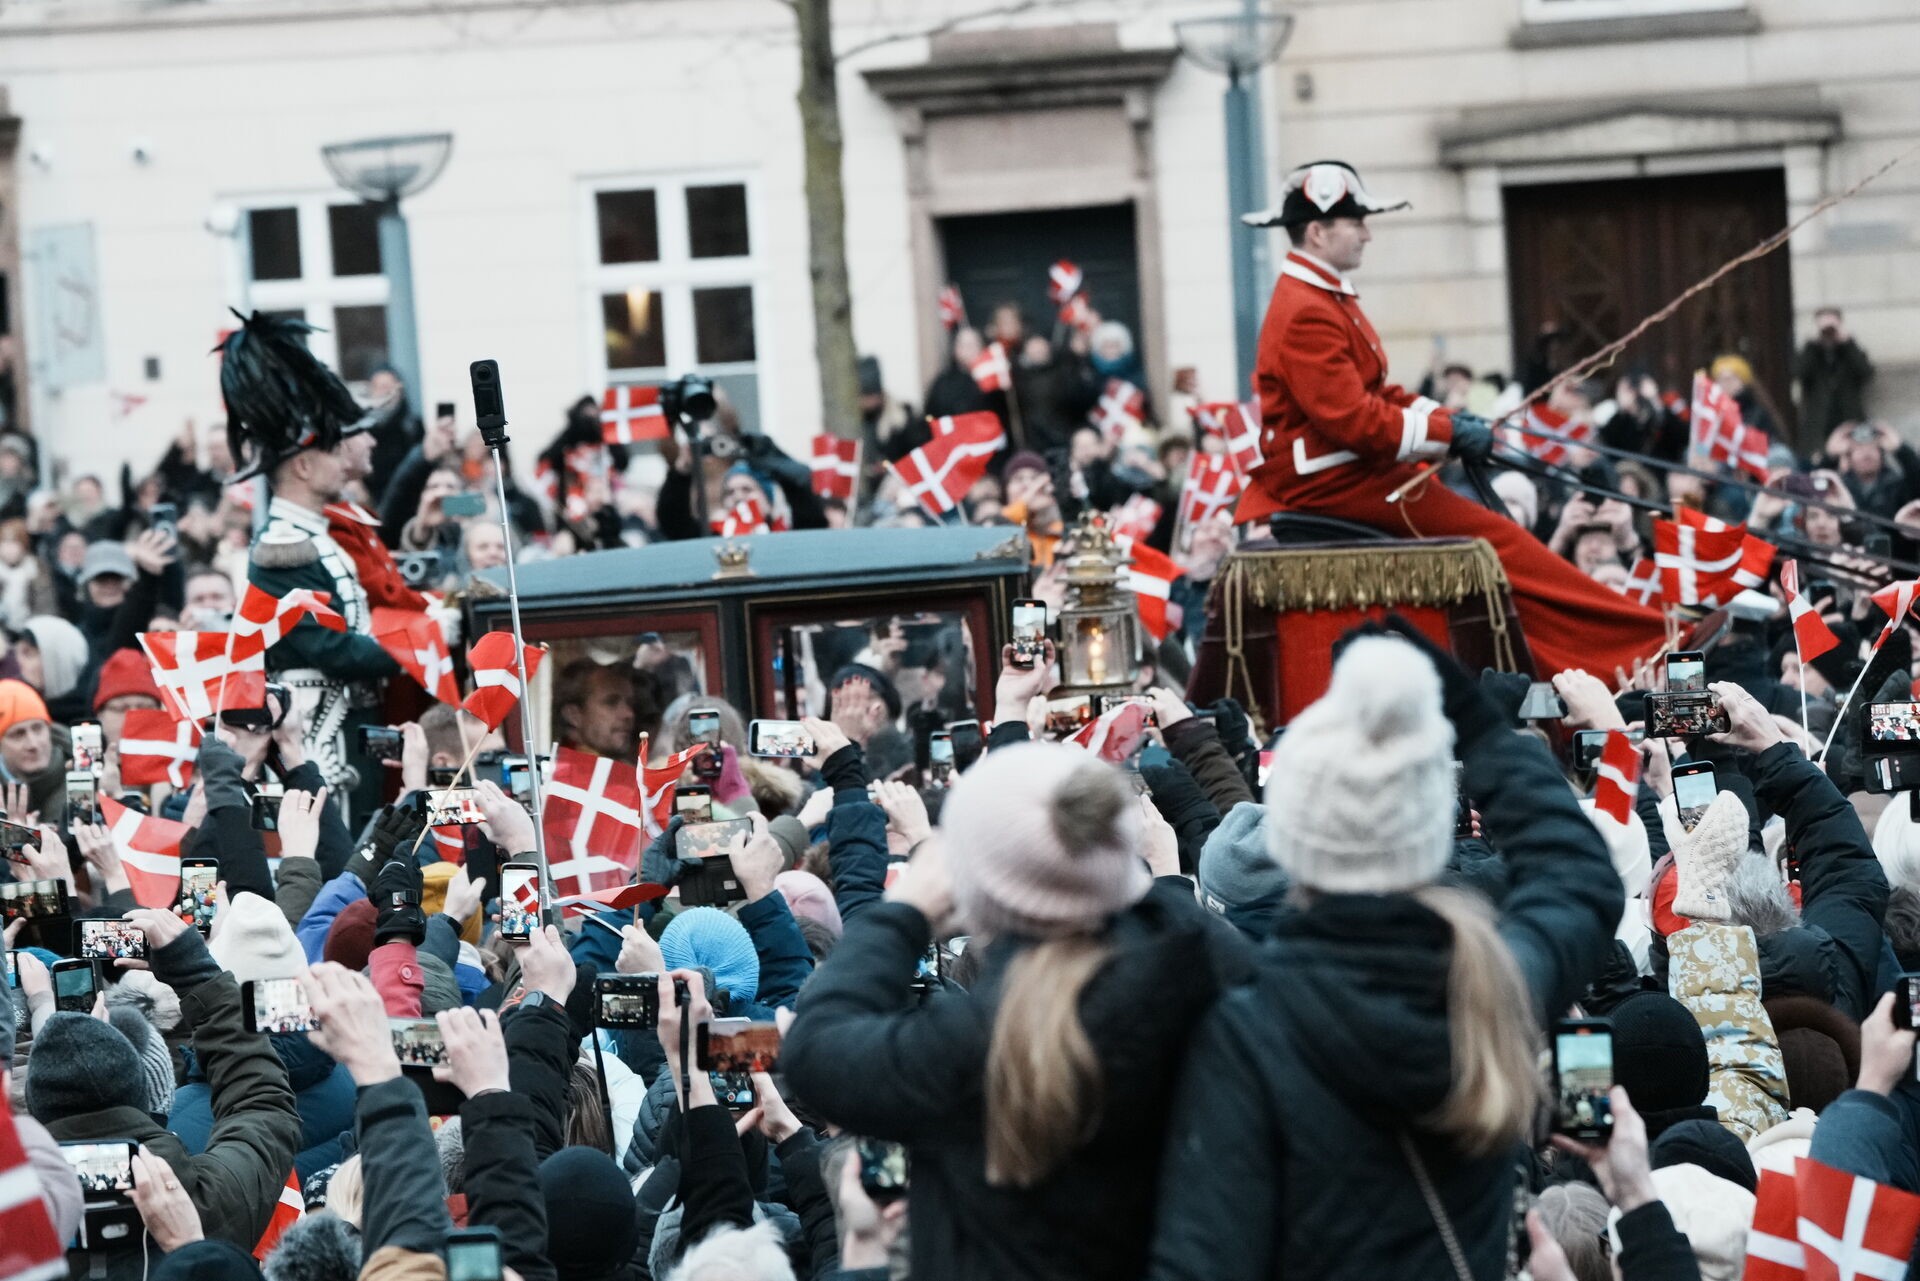 La carrozza che riporta a casa i nuovi re e regina di Danimarca, circondata dalla folla.